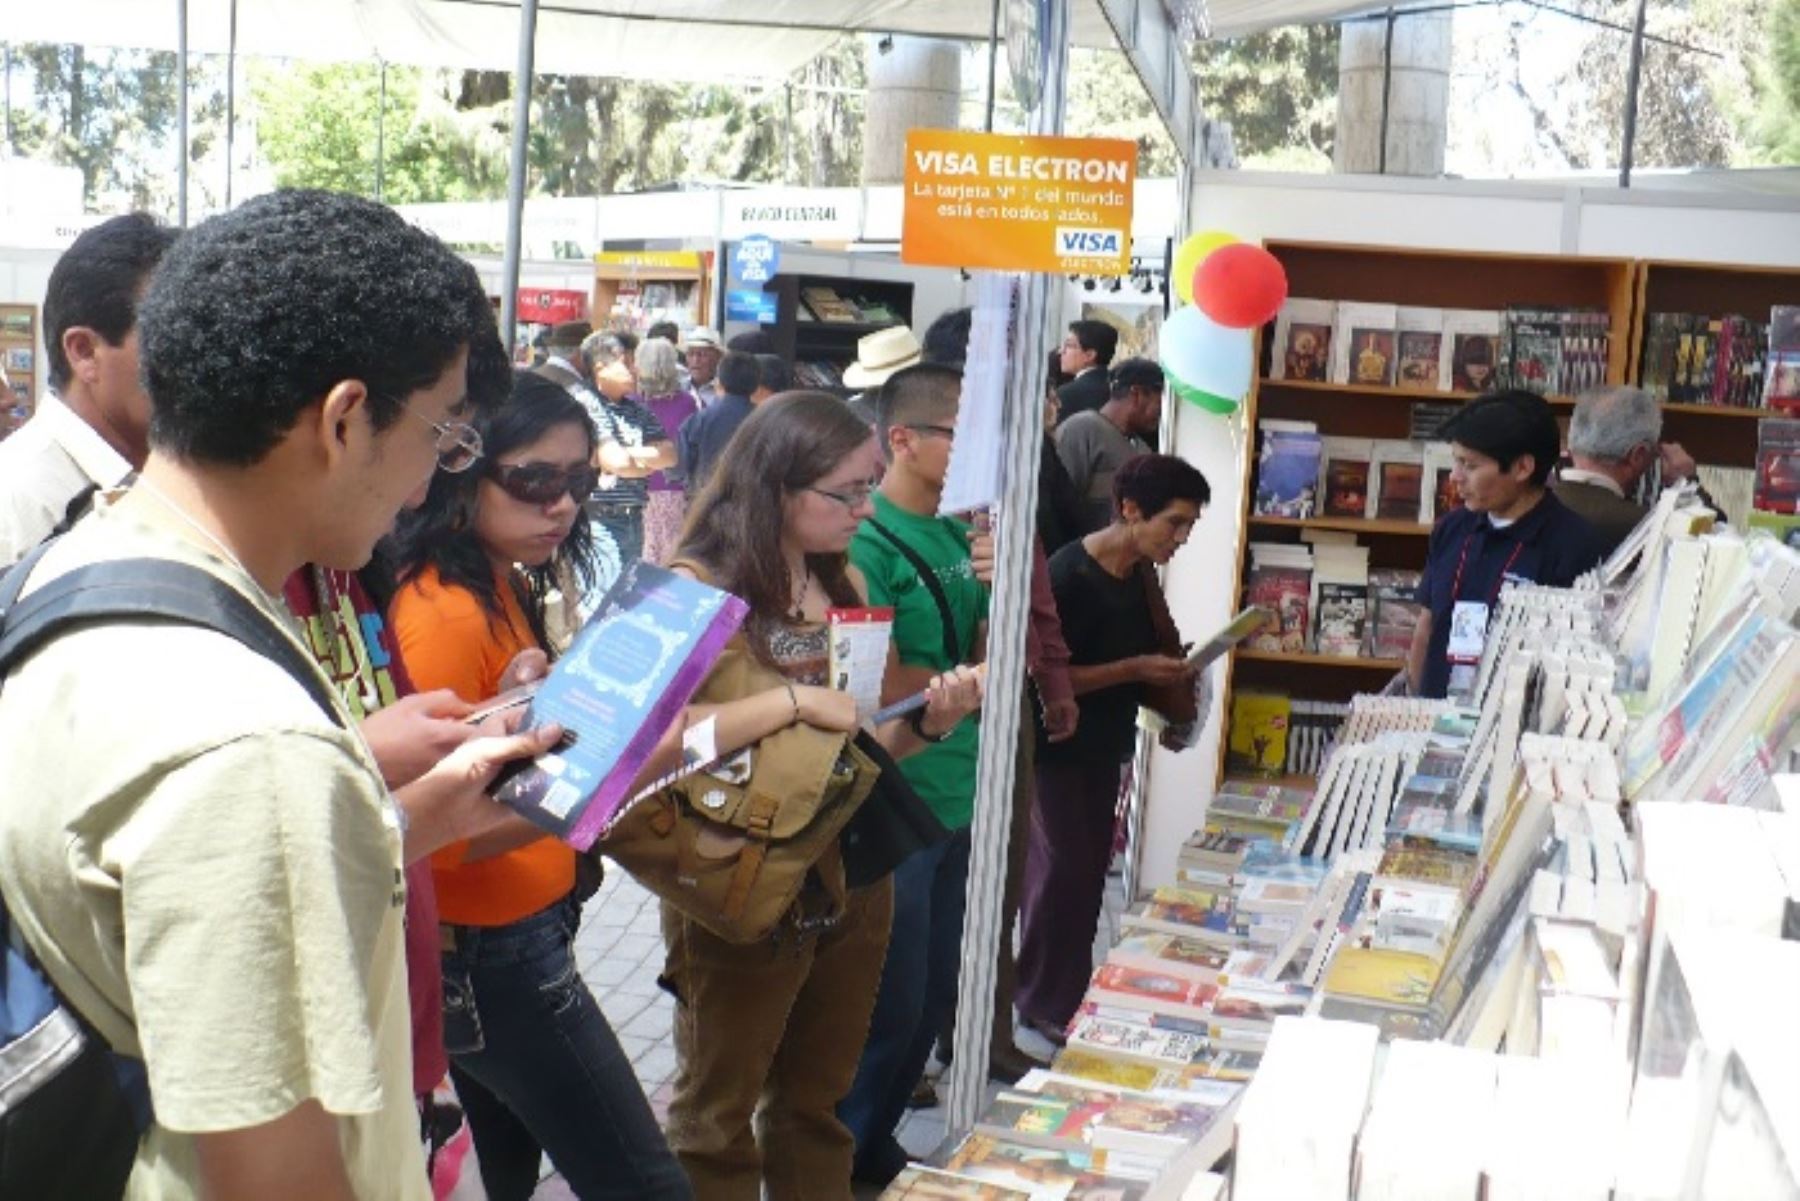 Arrancó la Feria Internacional del Libro en Arequipa